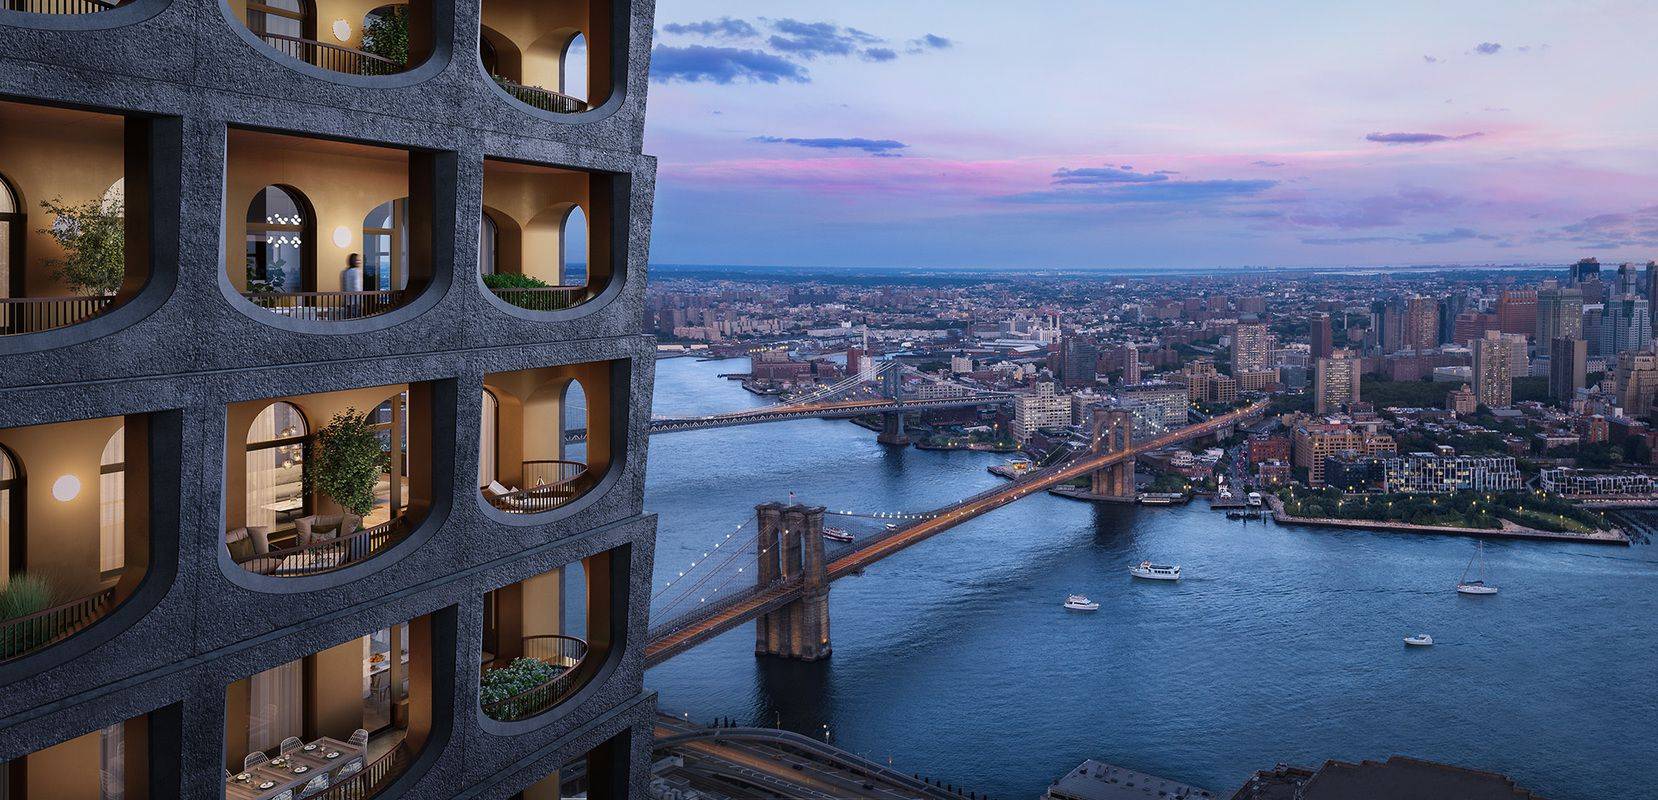 다운타운 맨해튼 신축 콘도 | 저명한 건축가의 유니크한 디자인 외관과 최신 시설이 돋보이는 콘도미니엄!